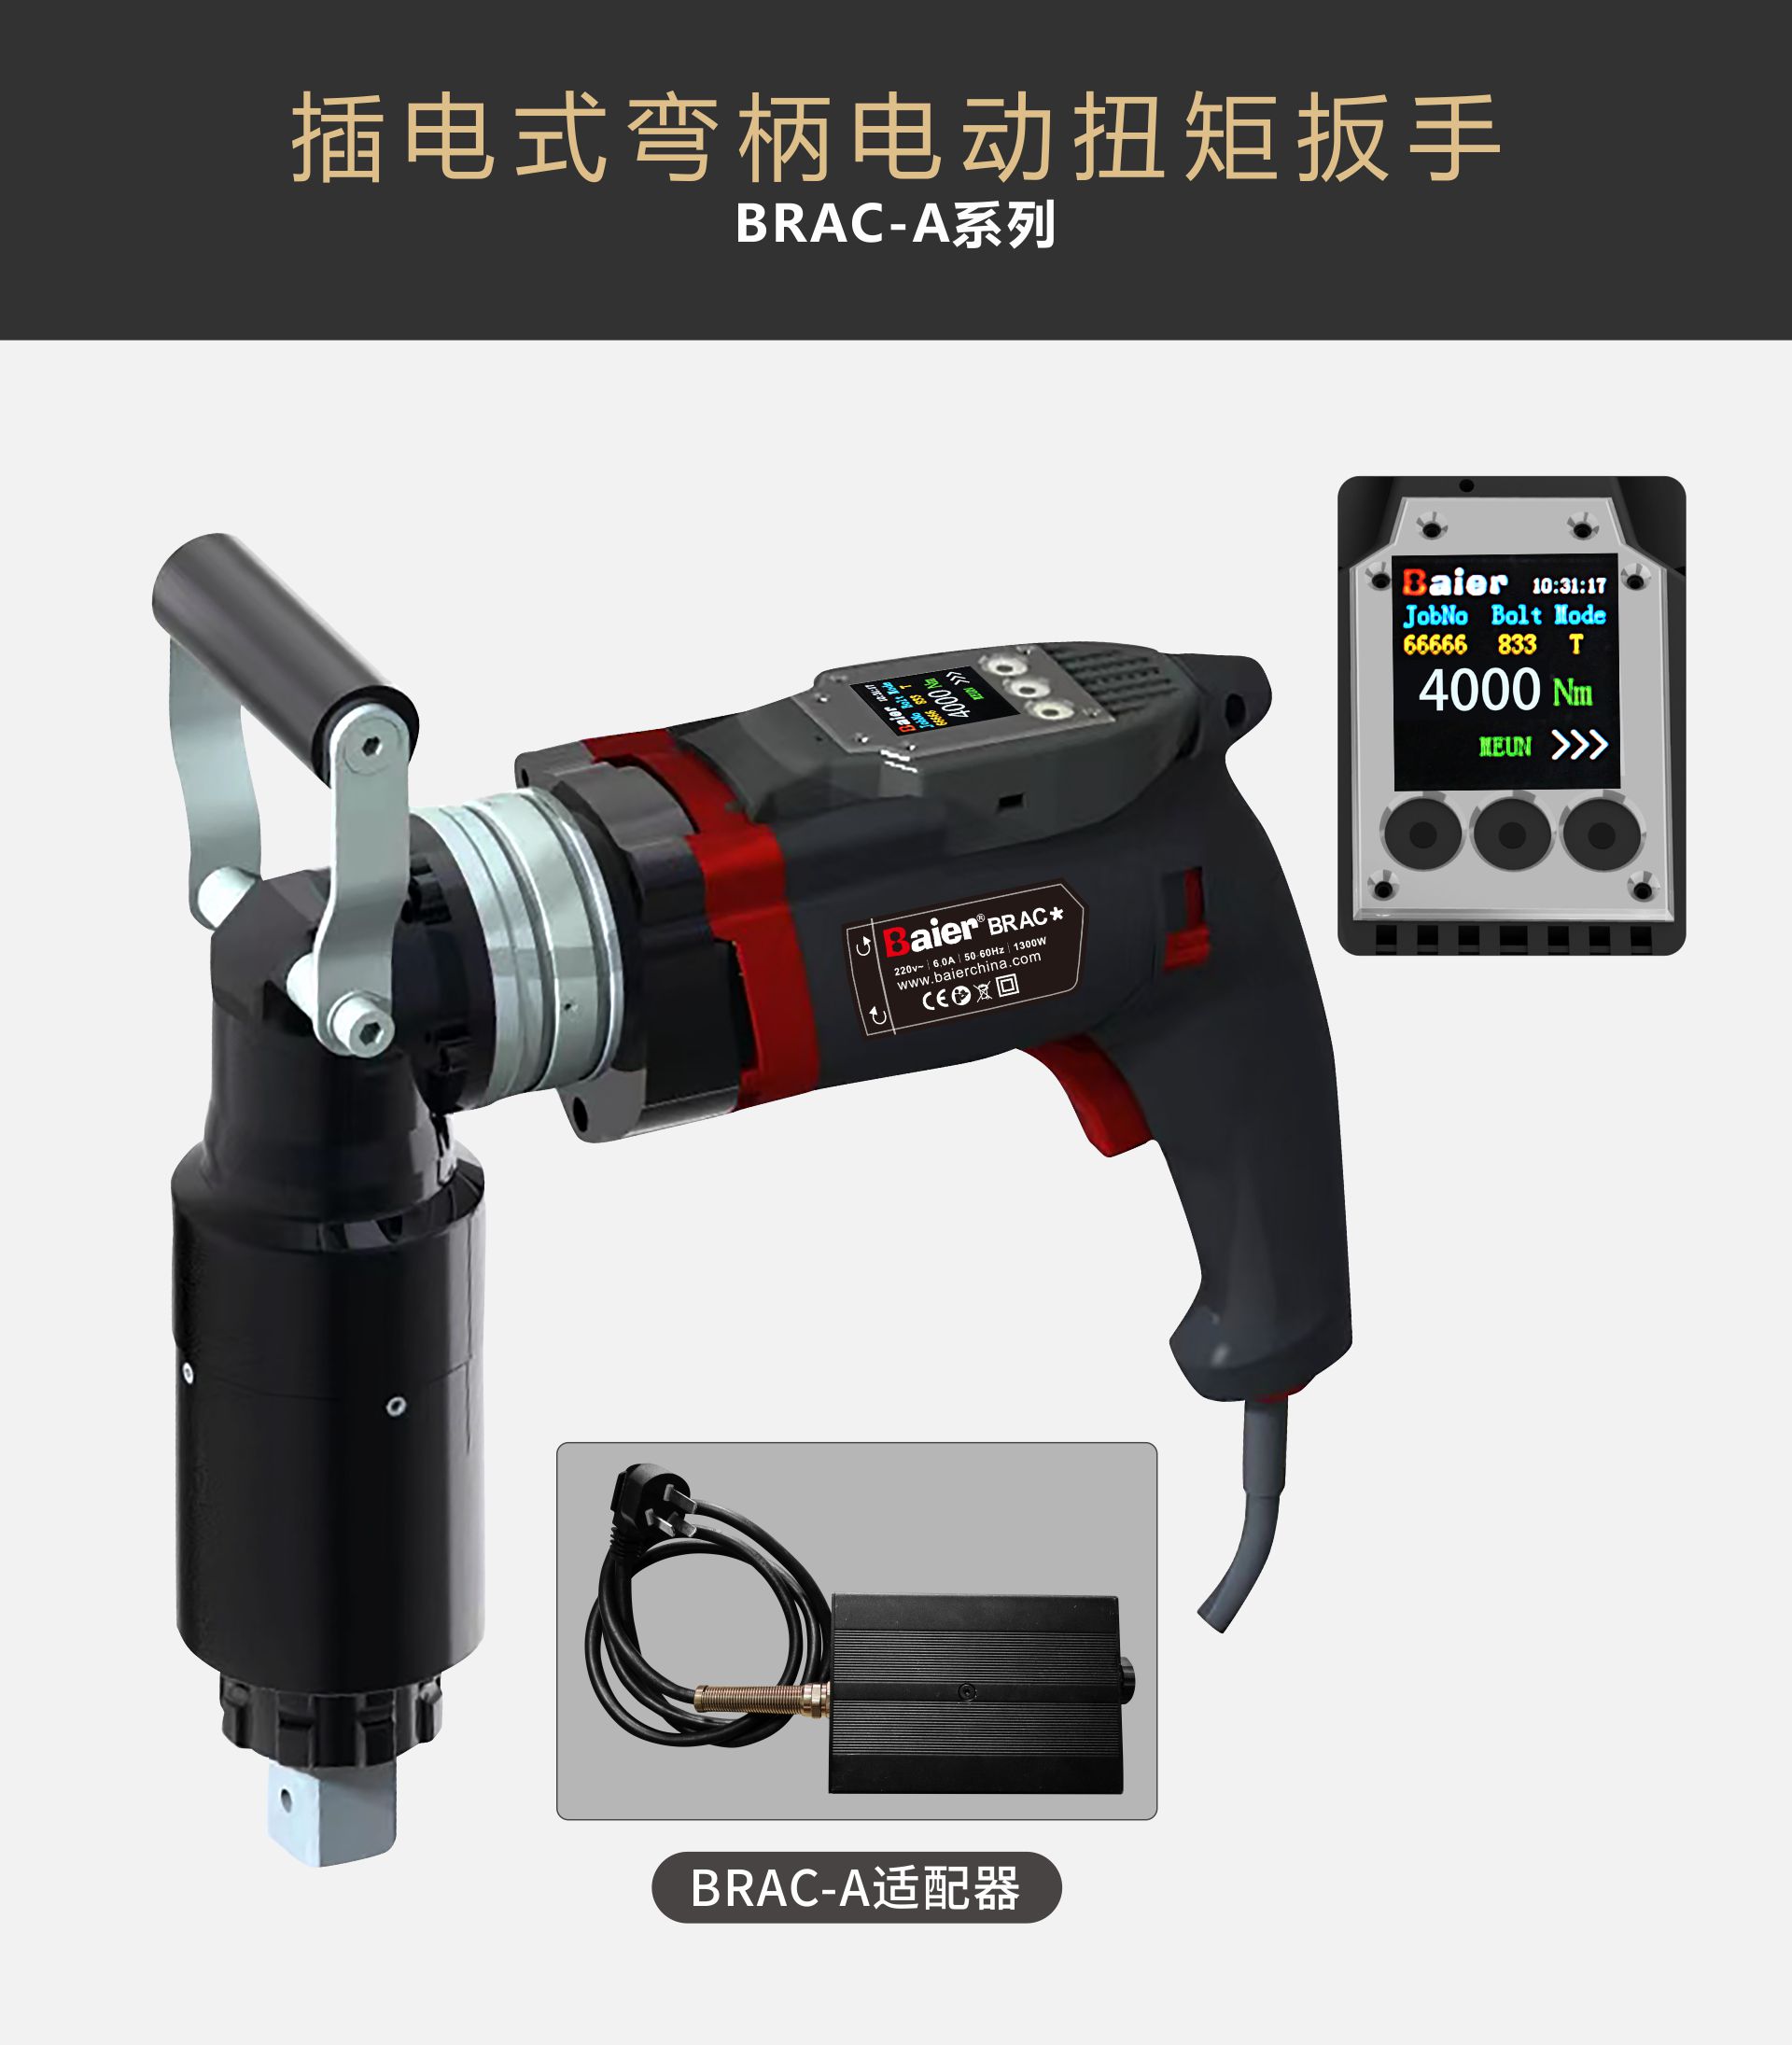 BRAC-A系列数显弯柄电动扭矩扳手